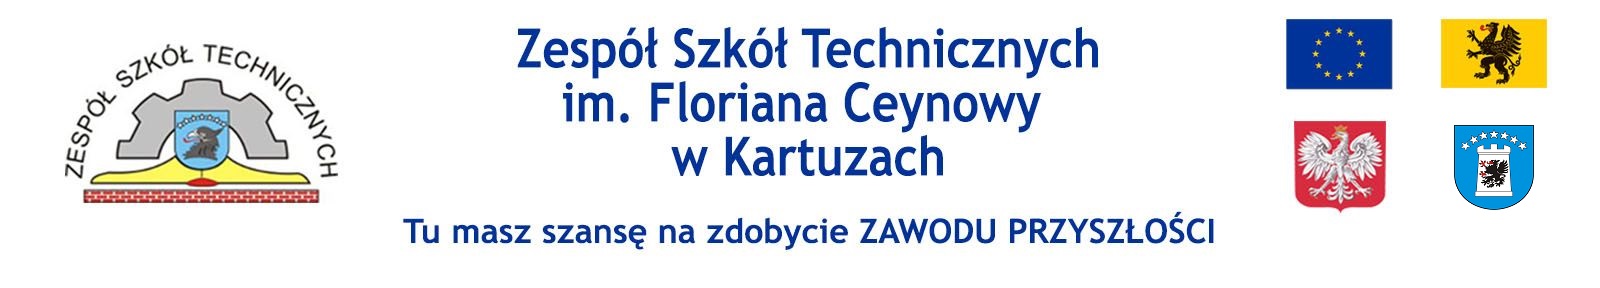 Zespół Szkół Technicznych w Kartuzach